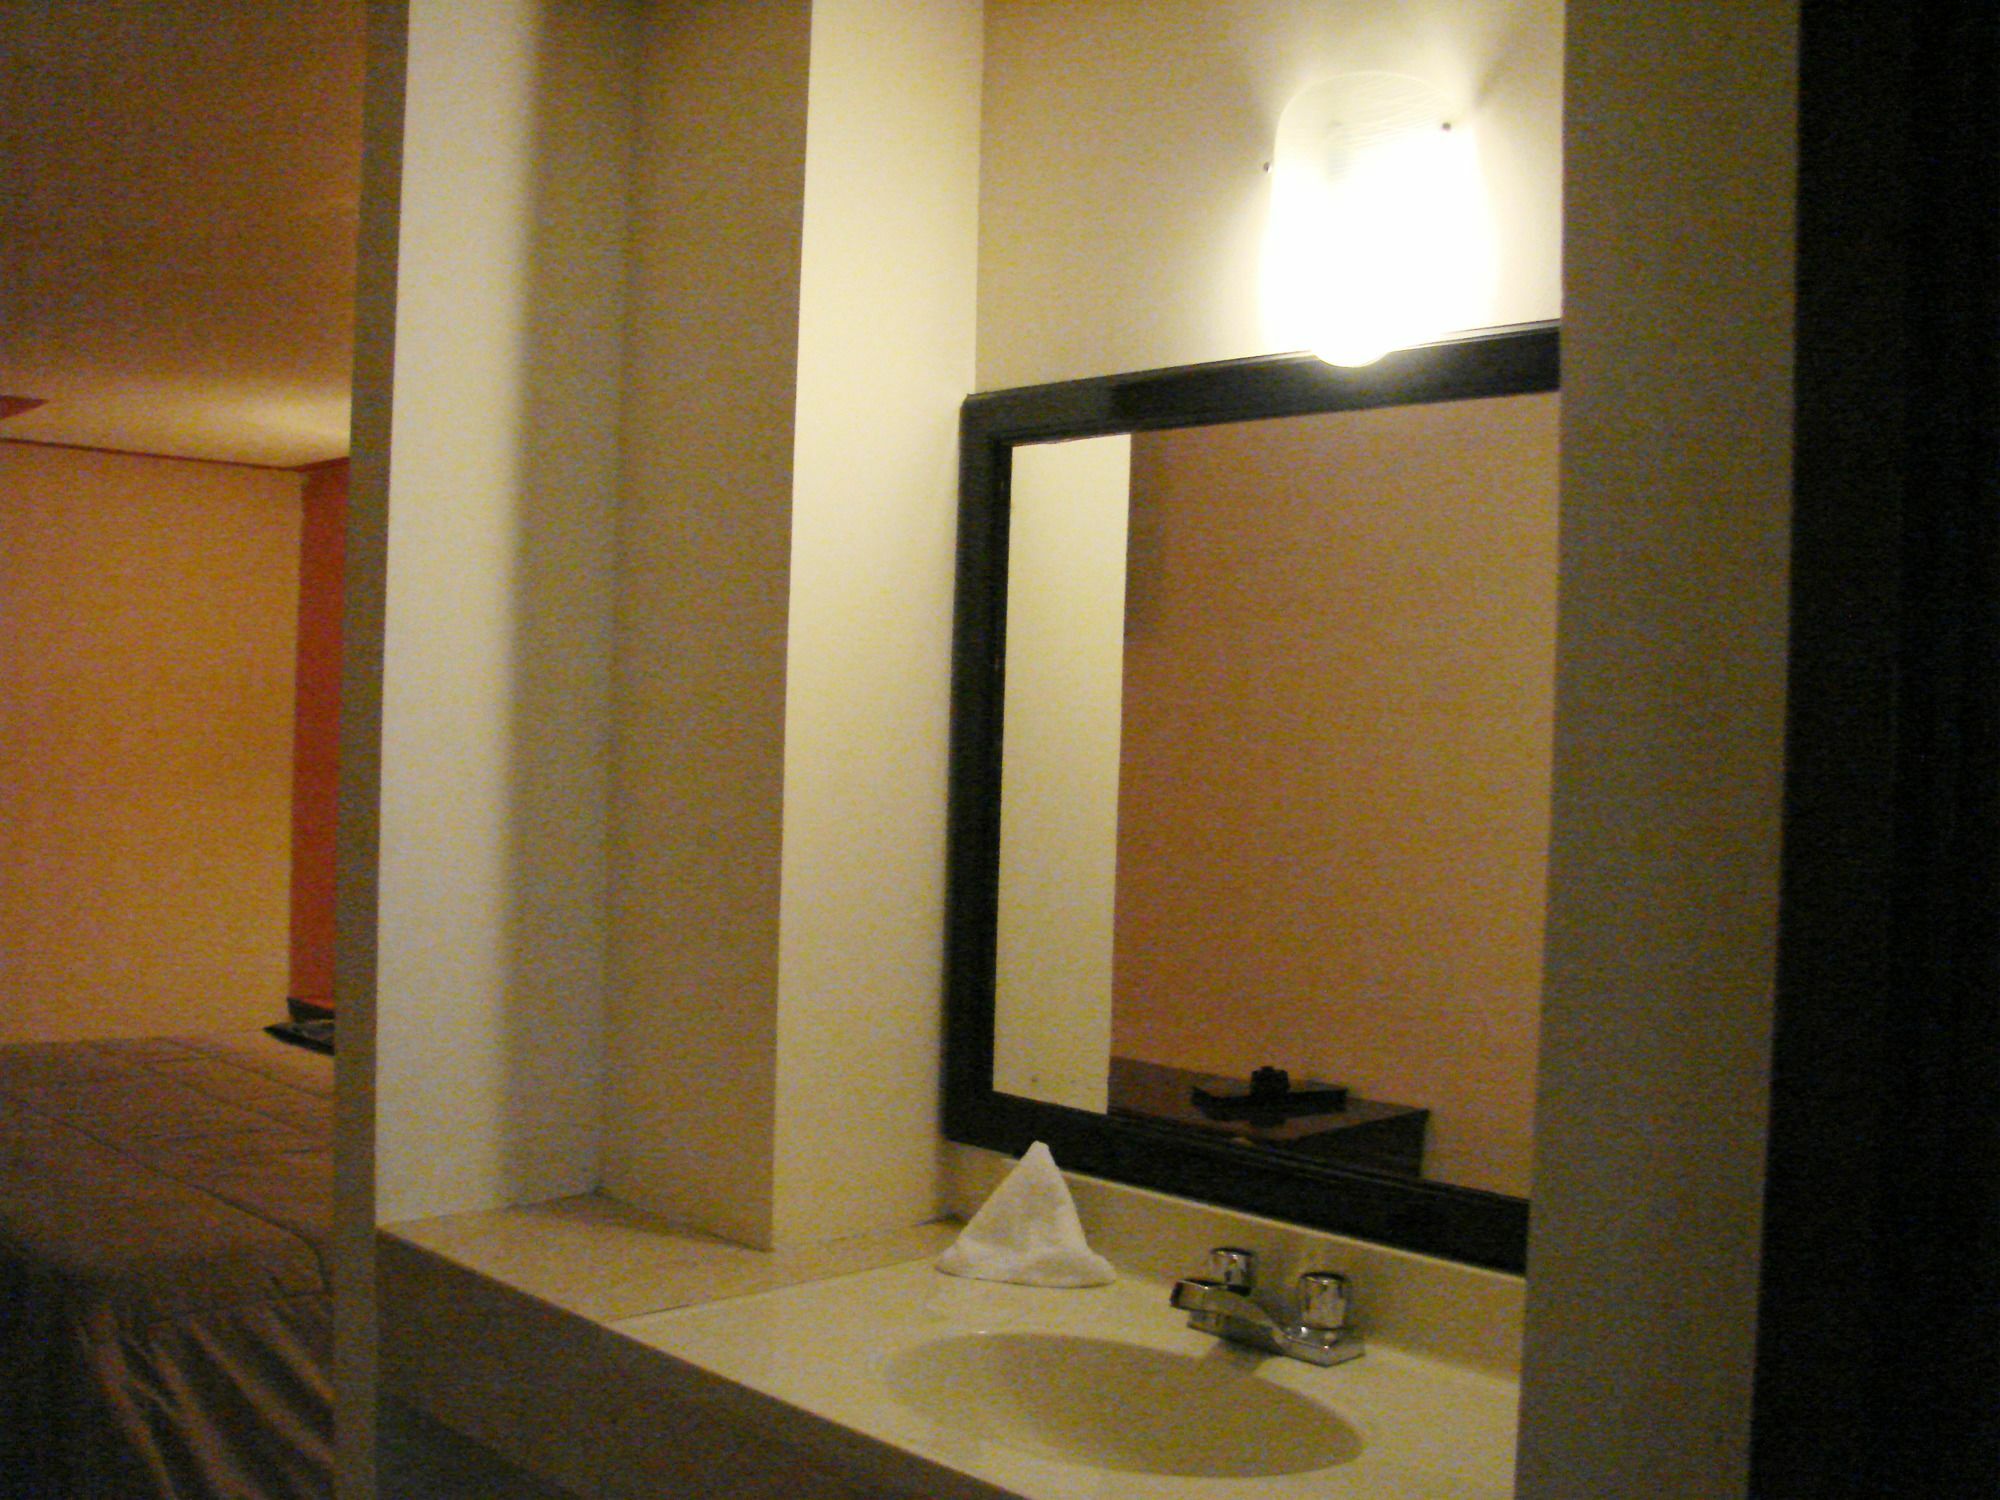 Hotel Inn Plaza Del Angel Чіуауа Екстер'єр фото